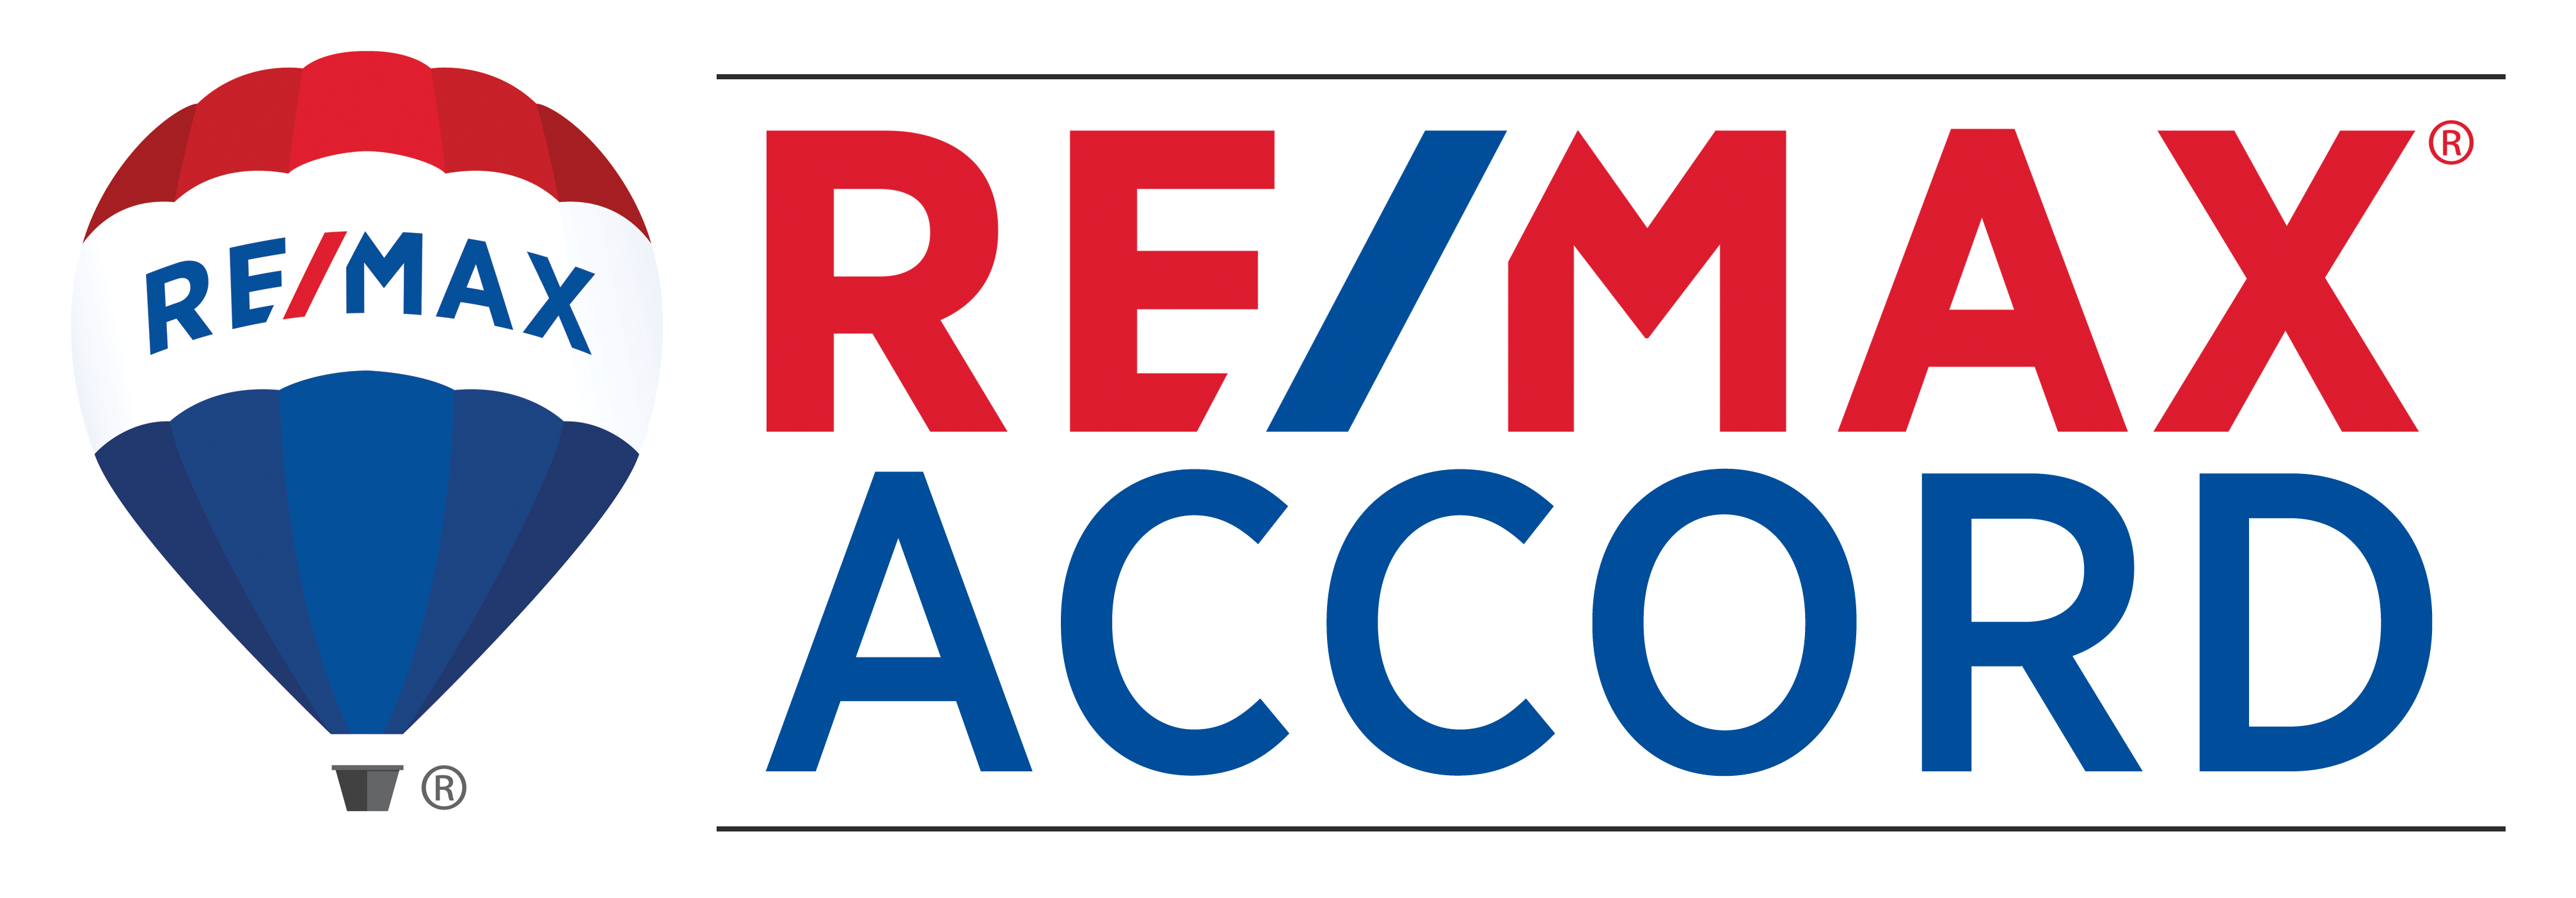 Remax Accord | License #00695958